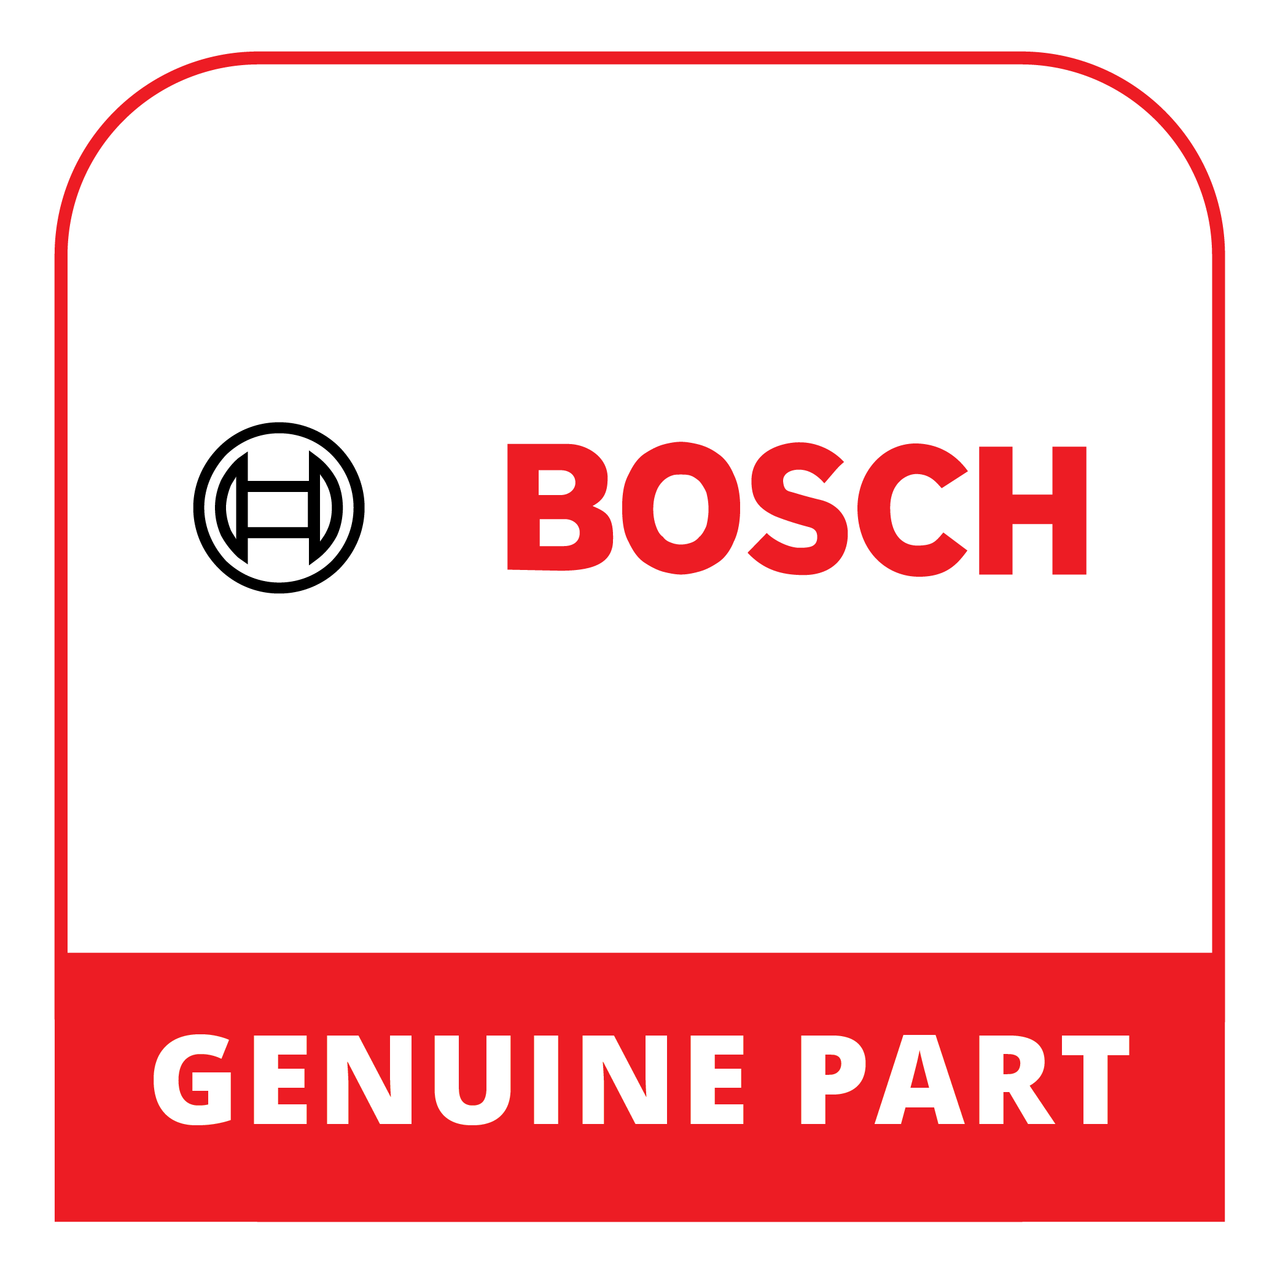 Bosch (Thermador) 23001243 - Door - Genuine Bosch (Thermador) Part